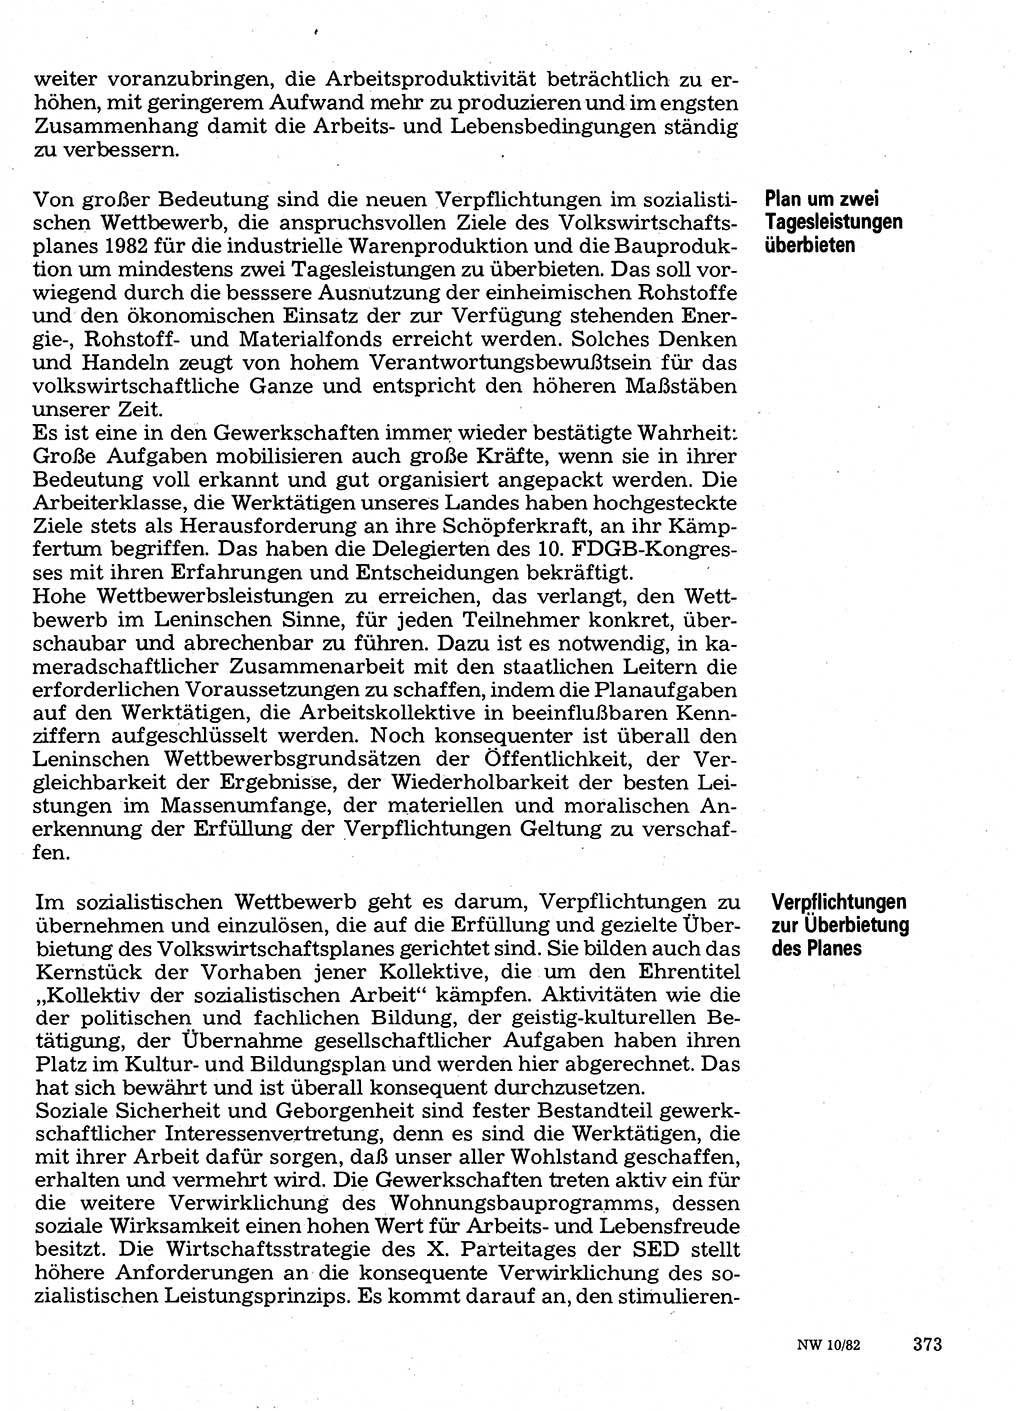 Neuer Weg (NW), Organ des Zentralkomitees (ZK) der SED (Sozialistische Einheitspartei Deutschlands) für Fragen des Parteilebens, 37. Jahrgang [Deutsche Demokratische Republik (DDR)] 1982, Seite 373 (NW ZK SED DDR 1982, S. 373)